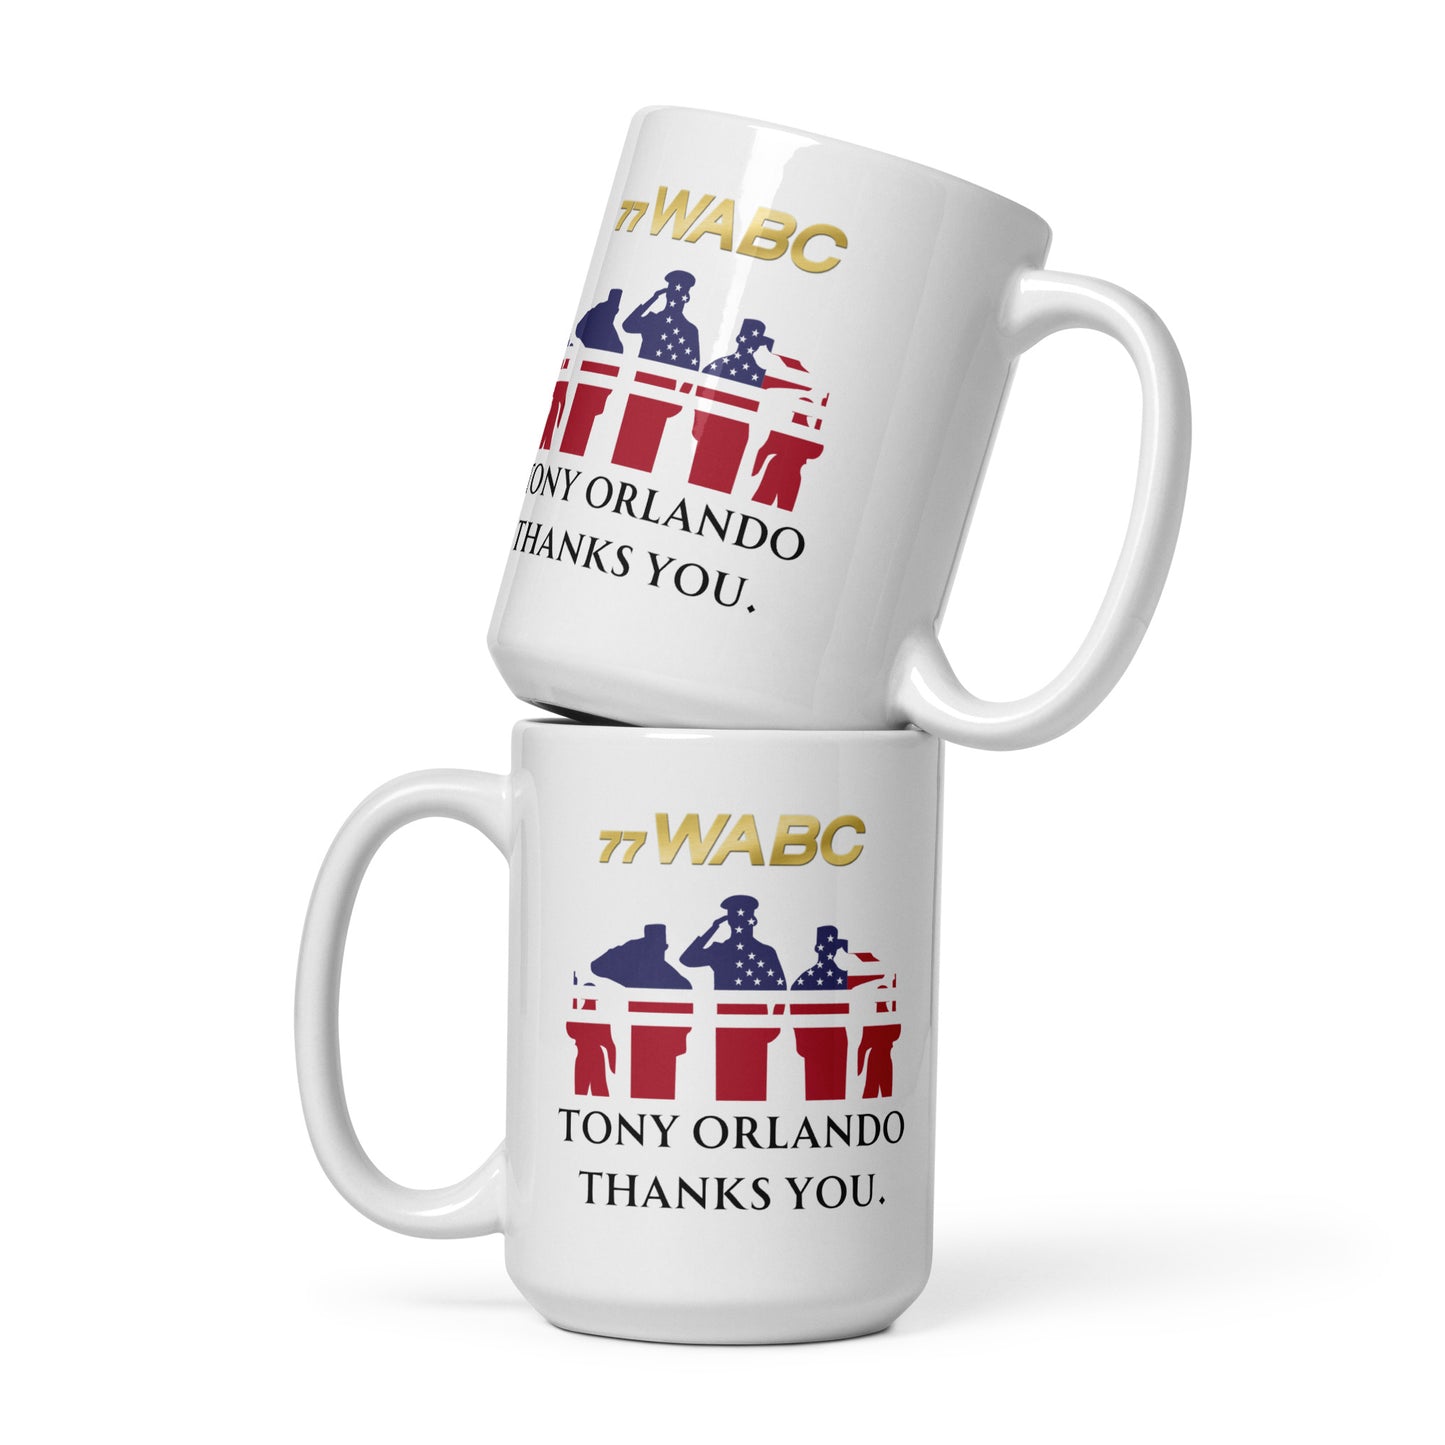 Tony Troops glossy mug